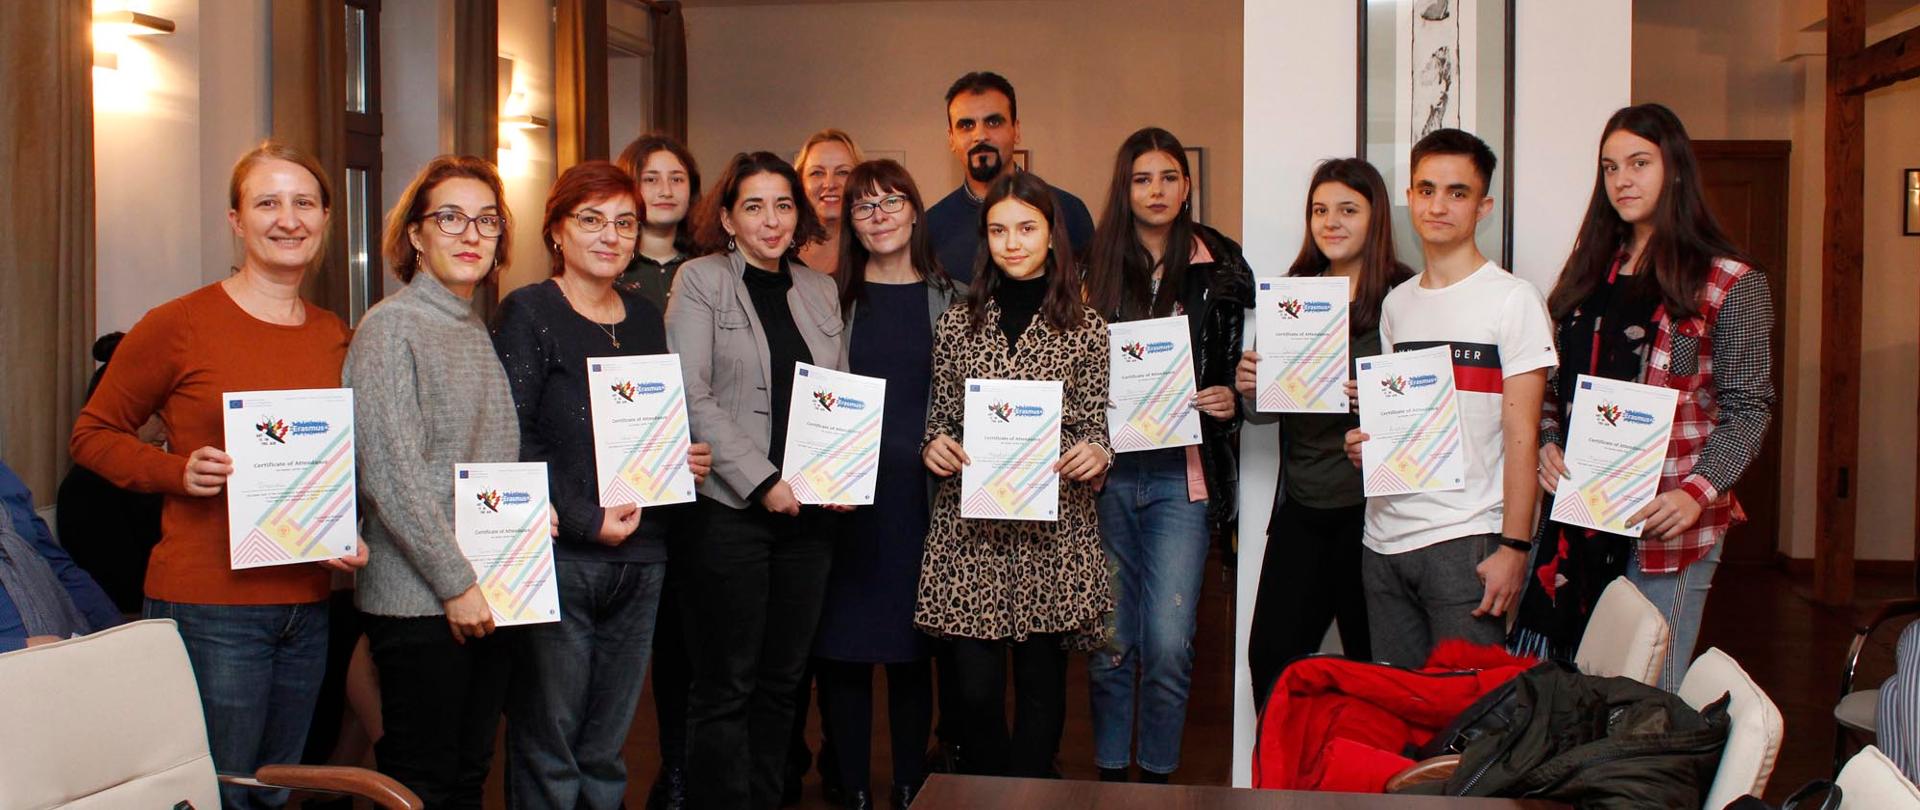 Na zdjęciu 13 osób trzymających w dłoniach dyplomy. Osoby są uczestnikami programu Erasmus+.